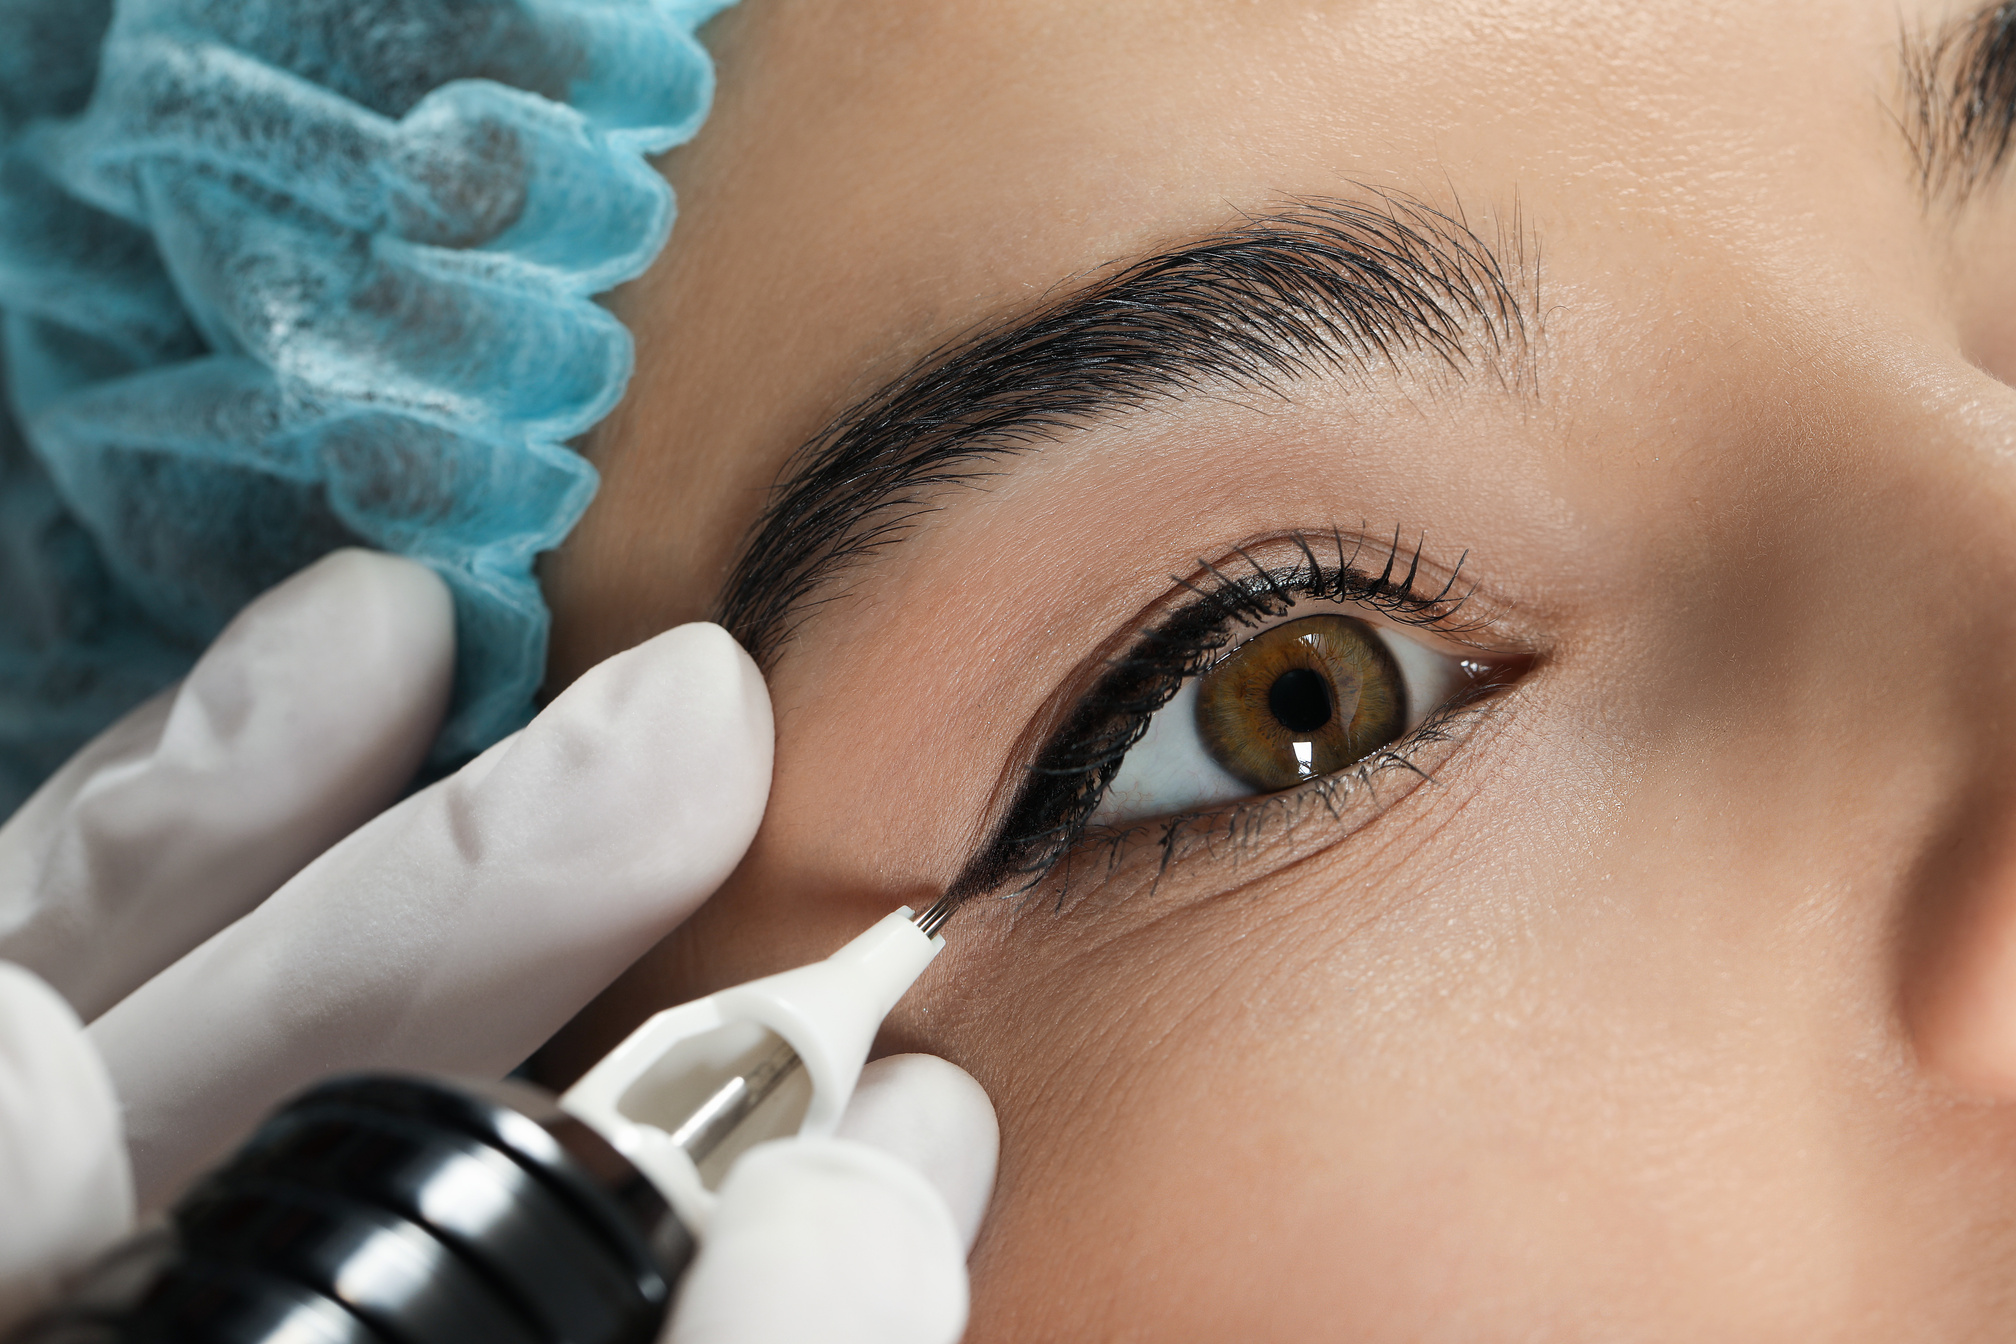 Young Woman Undergoing Procedure of Permanent Eyeliner Makeup, C